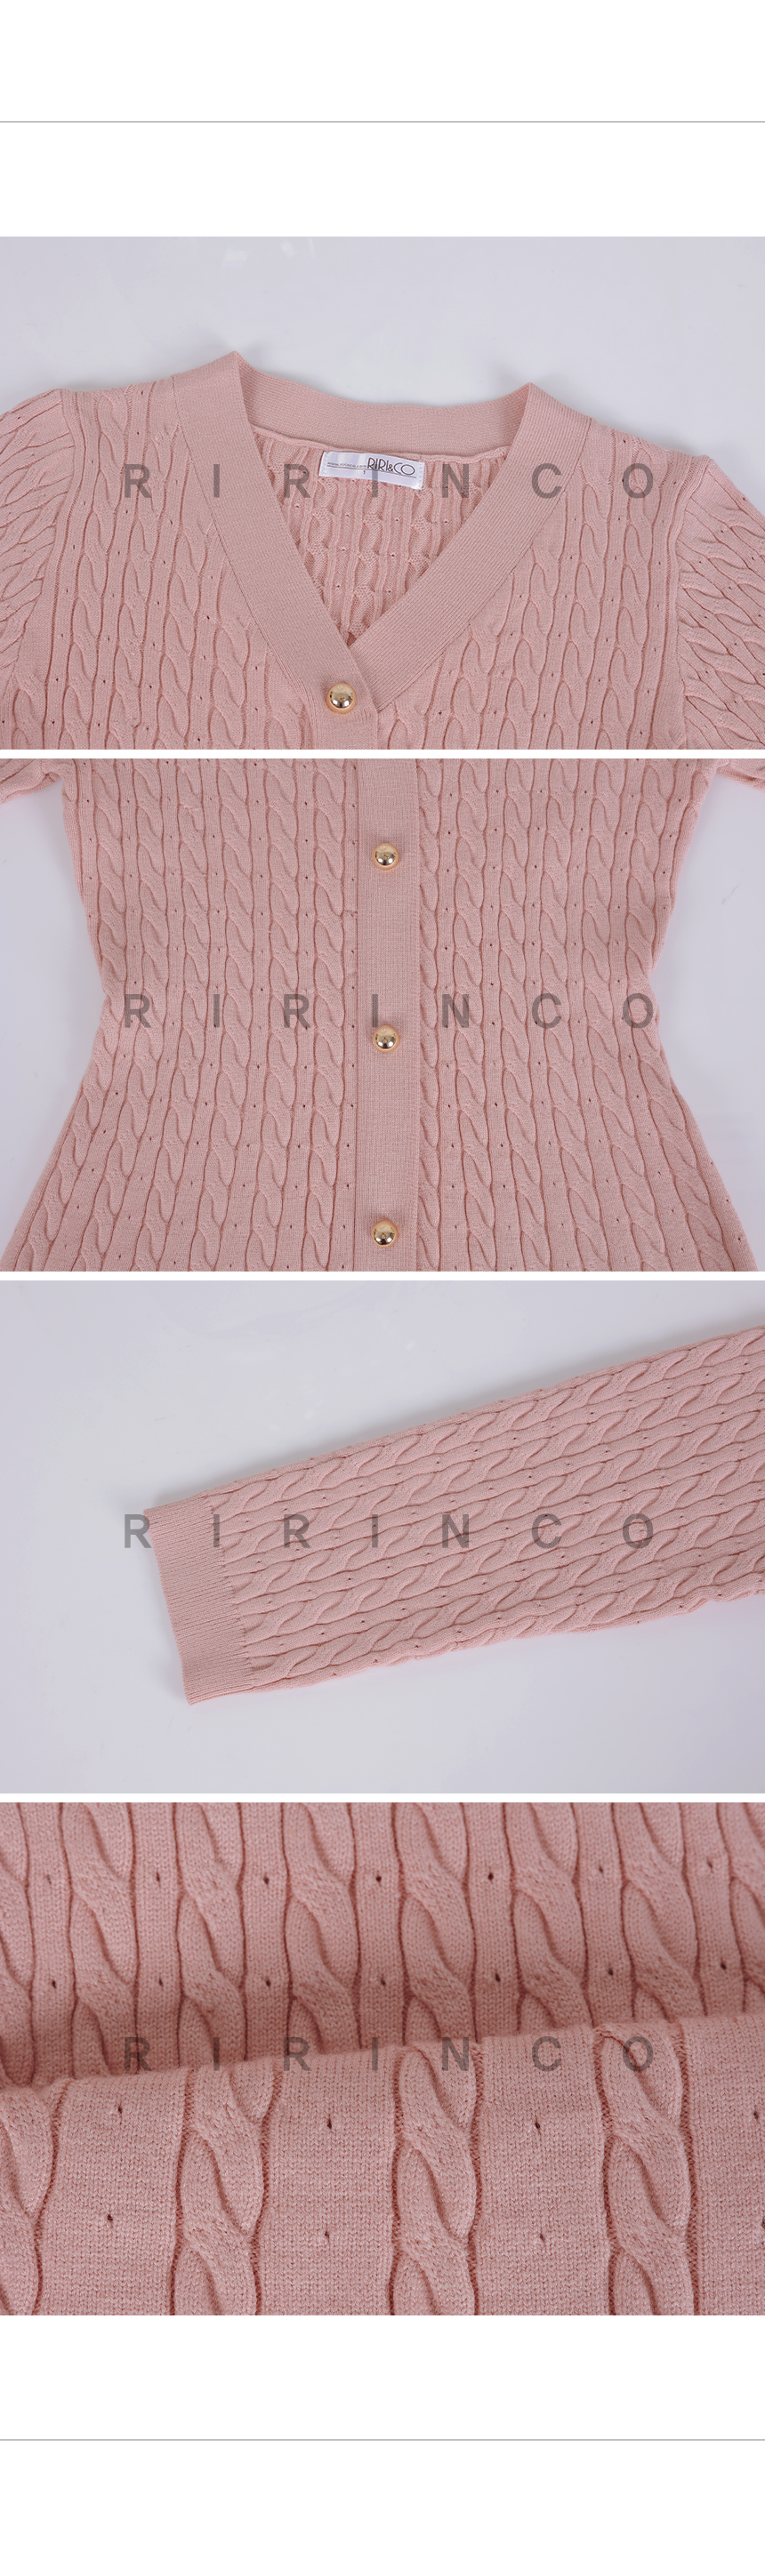 RIRINCO Ⅴネックケーブル編みニットミニワンピース 